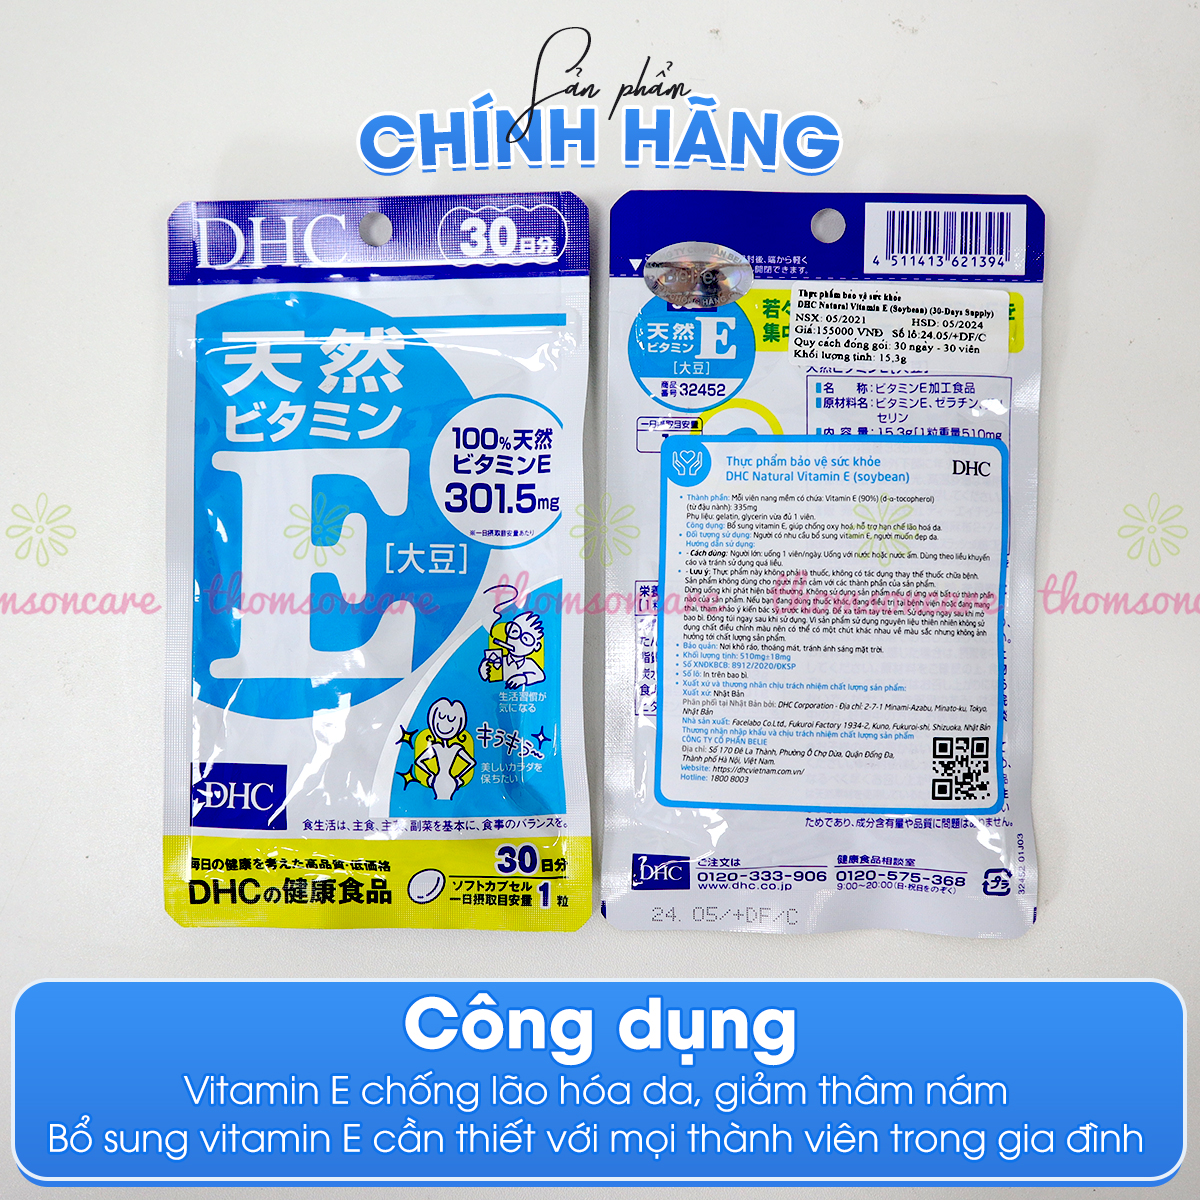 Viên uống Vitamin E DHC - Bổ sung Vitamin E chống lão hóa da, giảm thâm da cho nữ - Hàng Chính Hãng DHC Nhật Bản